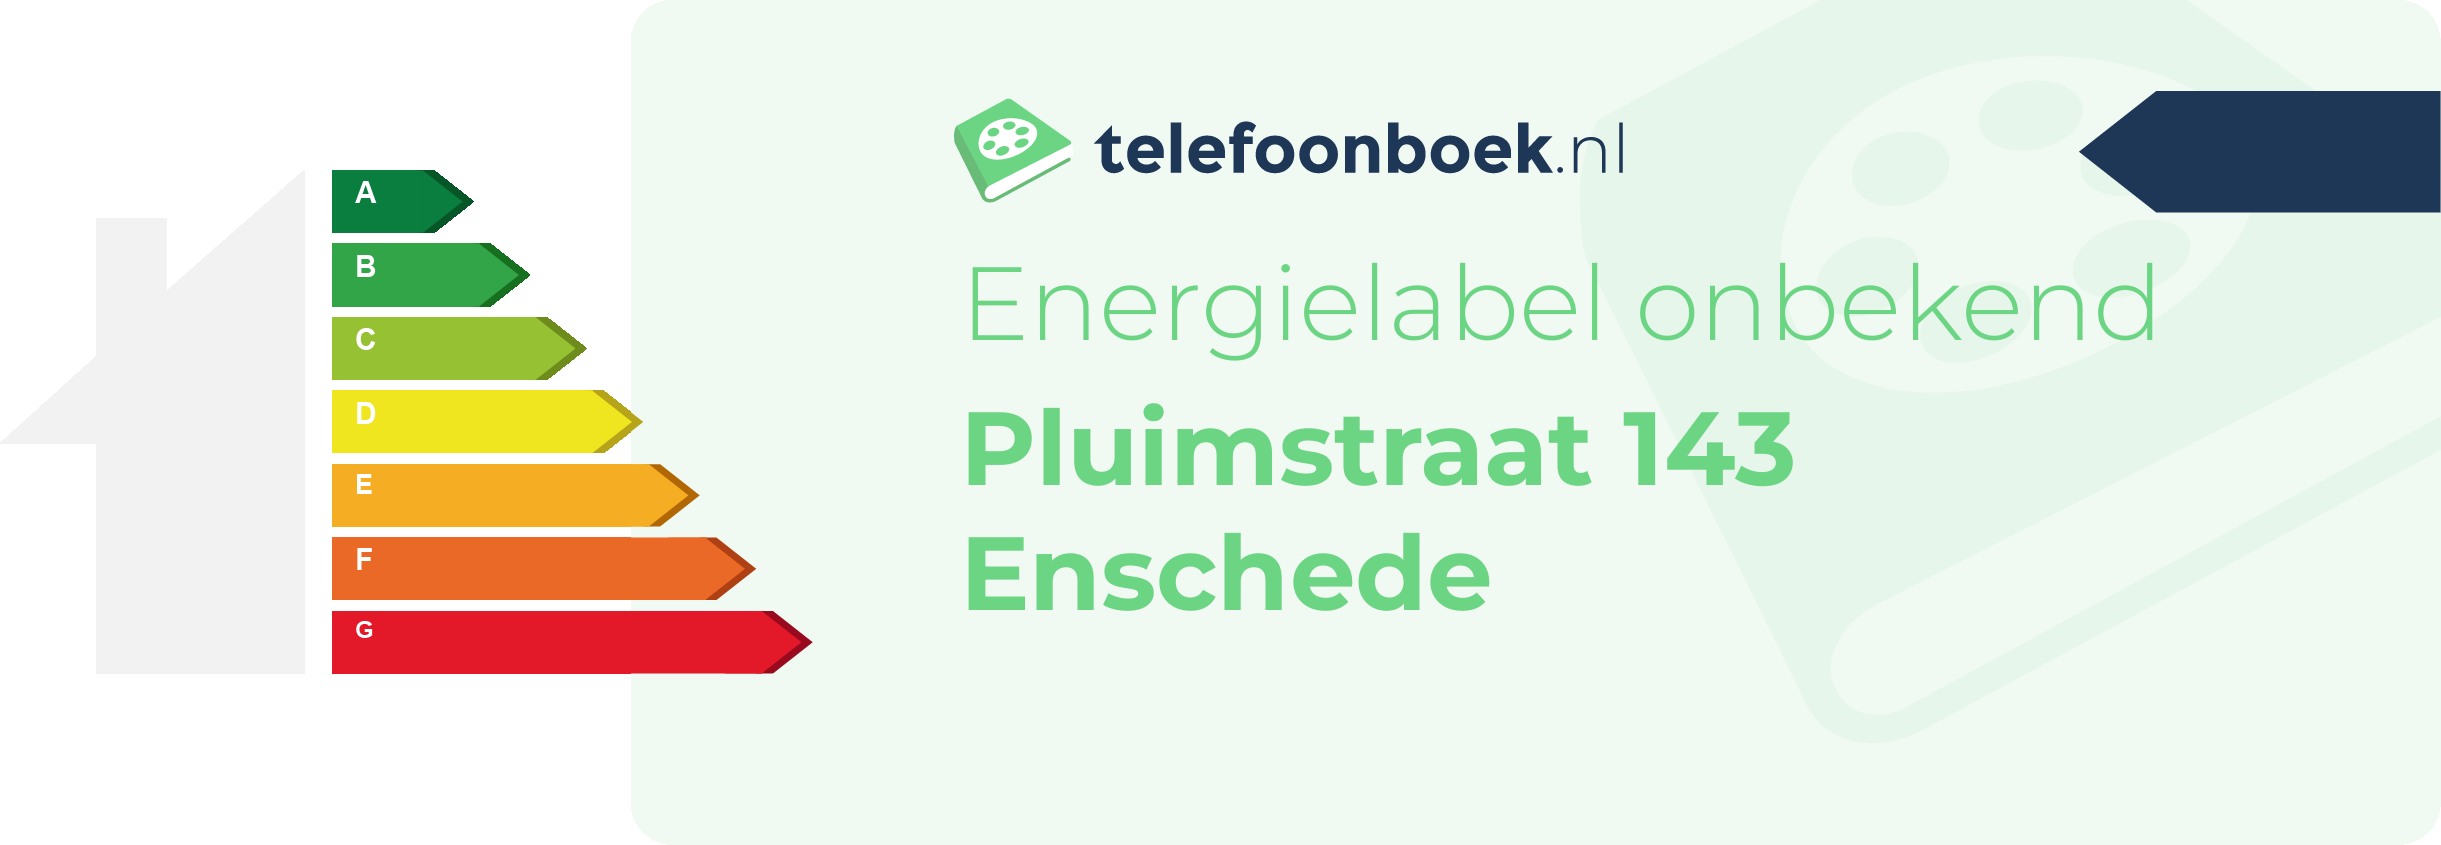 Energielabel Pluimstraat 143 Enschede